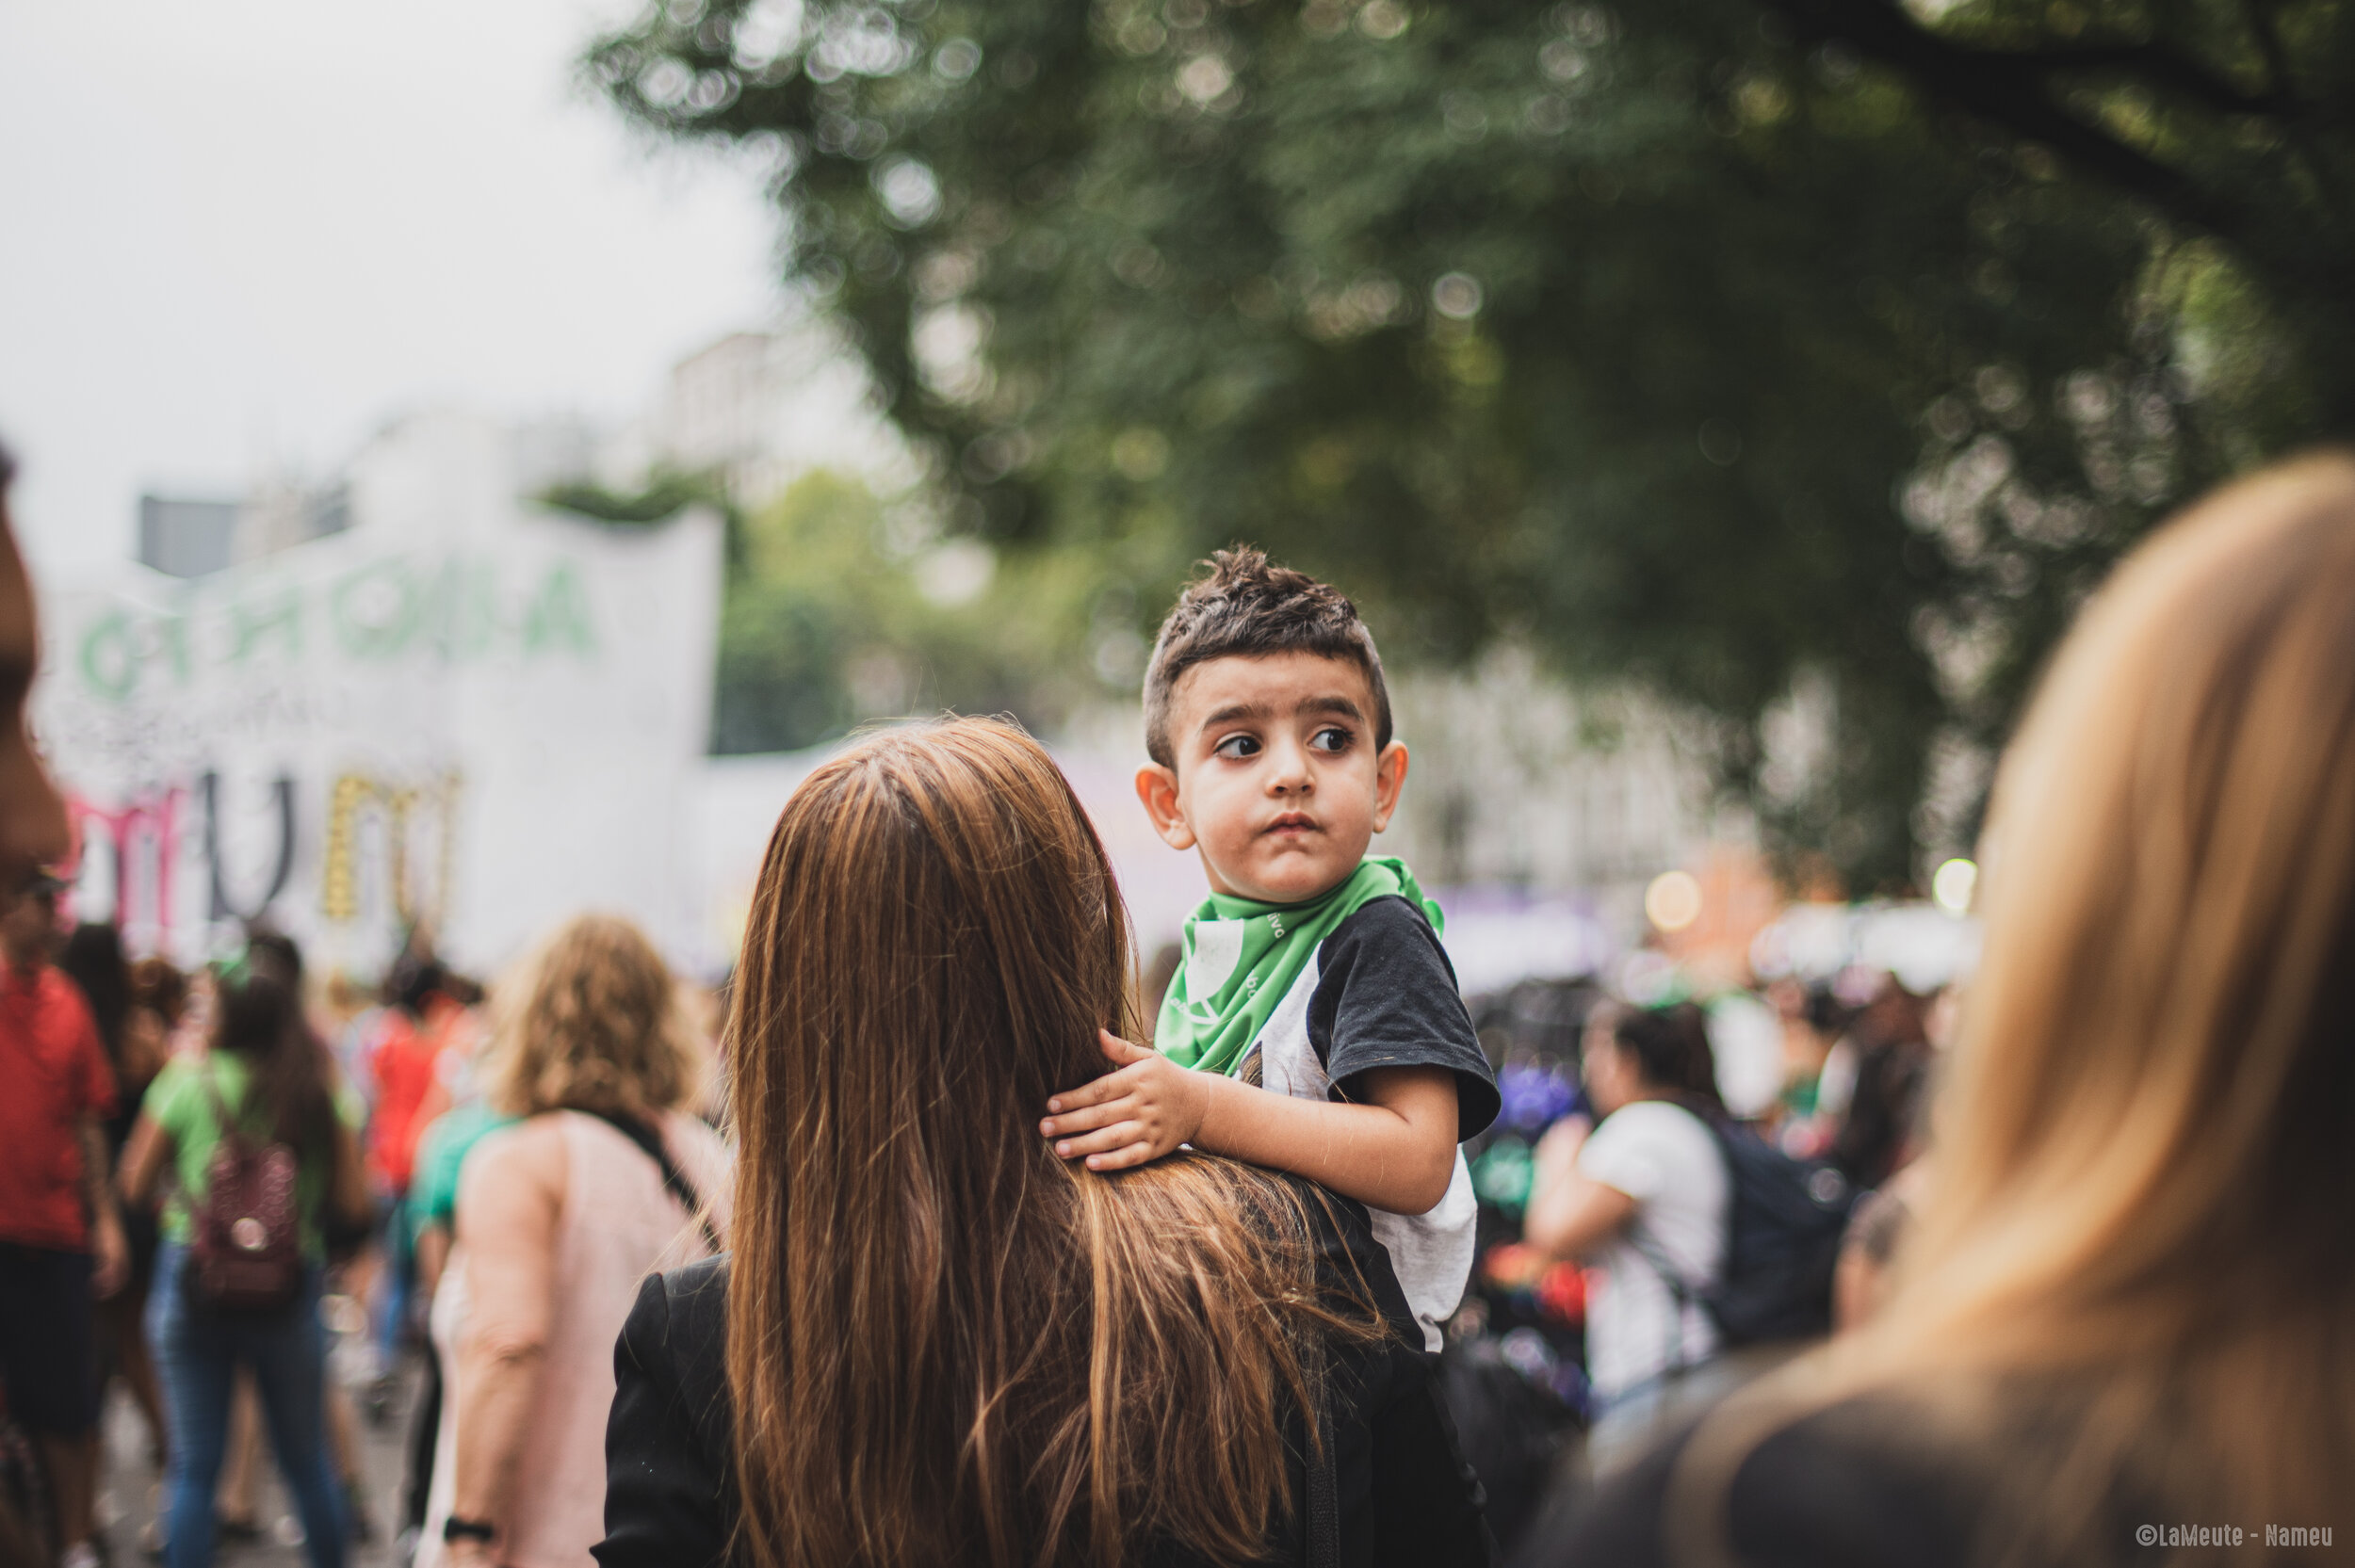   Une manifestante marche avec son fils dans les bras. Lui aussi porte un foulard vert en référence à la légalisation de l'avortement. « La maternité sera souhaitée ou ne sera pas ».  ©LaMeute – Nameu 